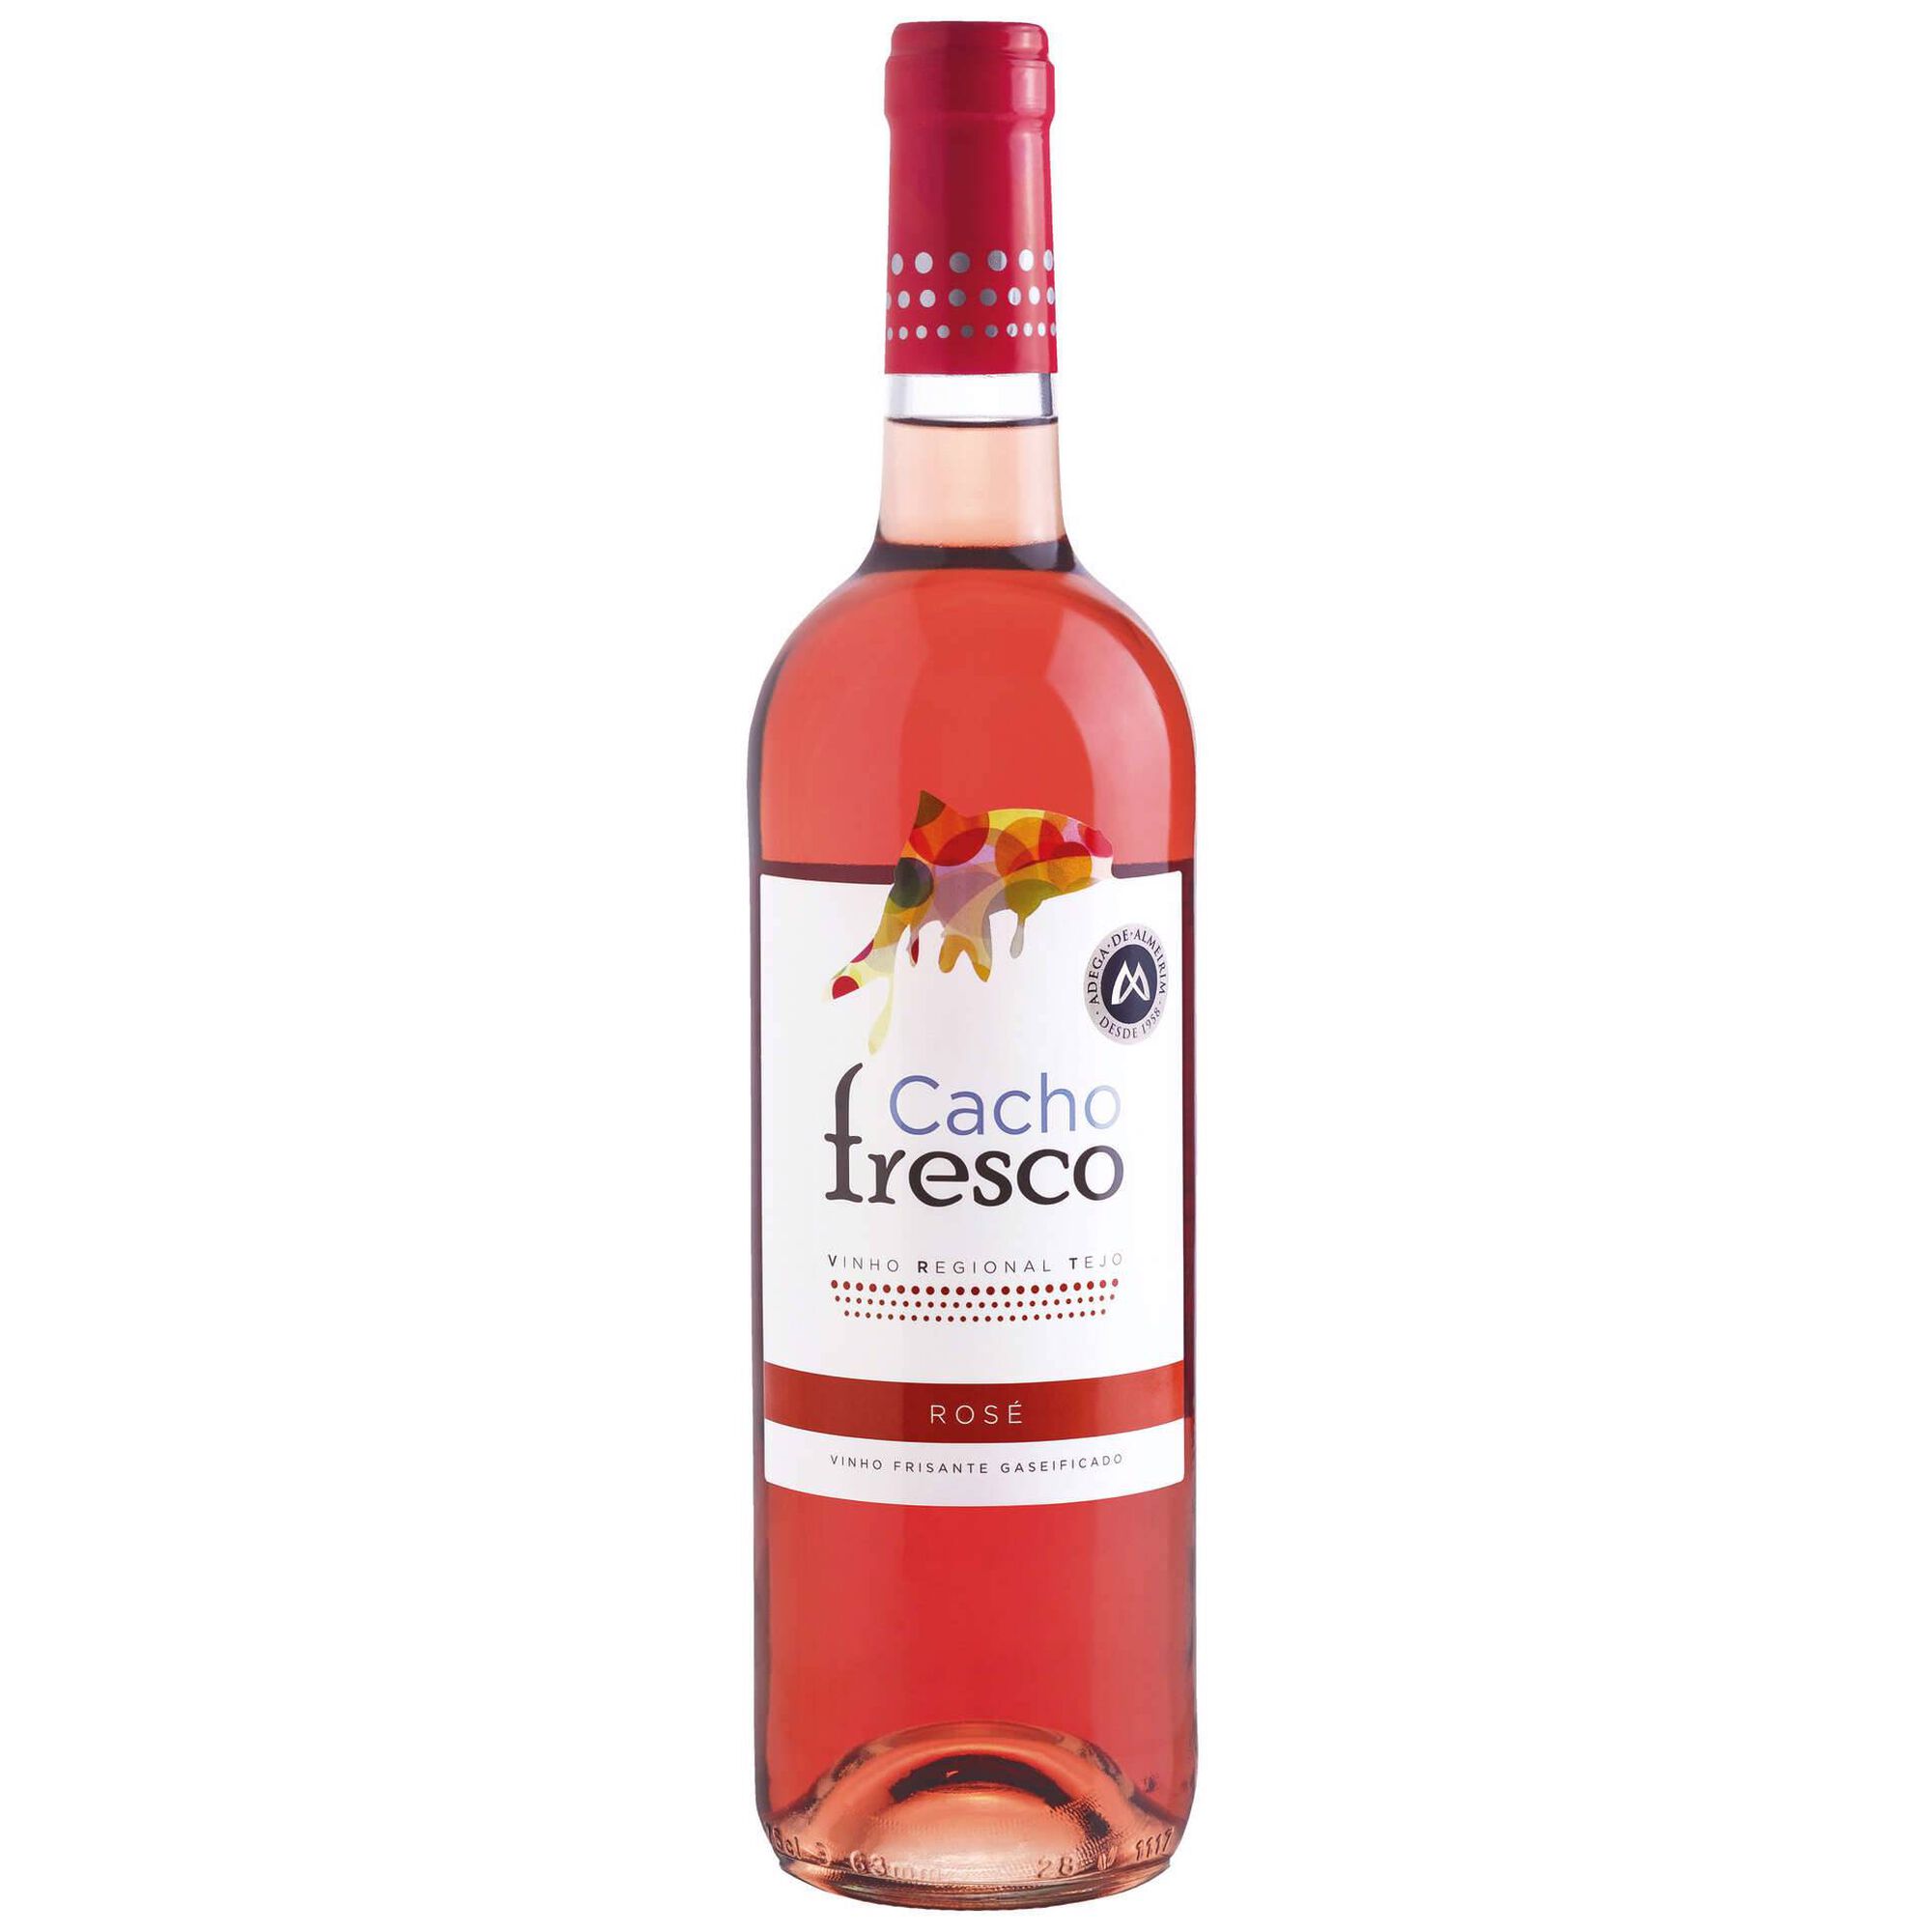 Cacho Fresco Frisante Regional Tejo Vinho Rosé